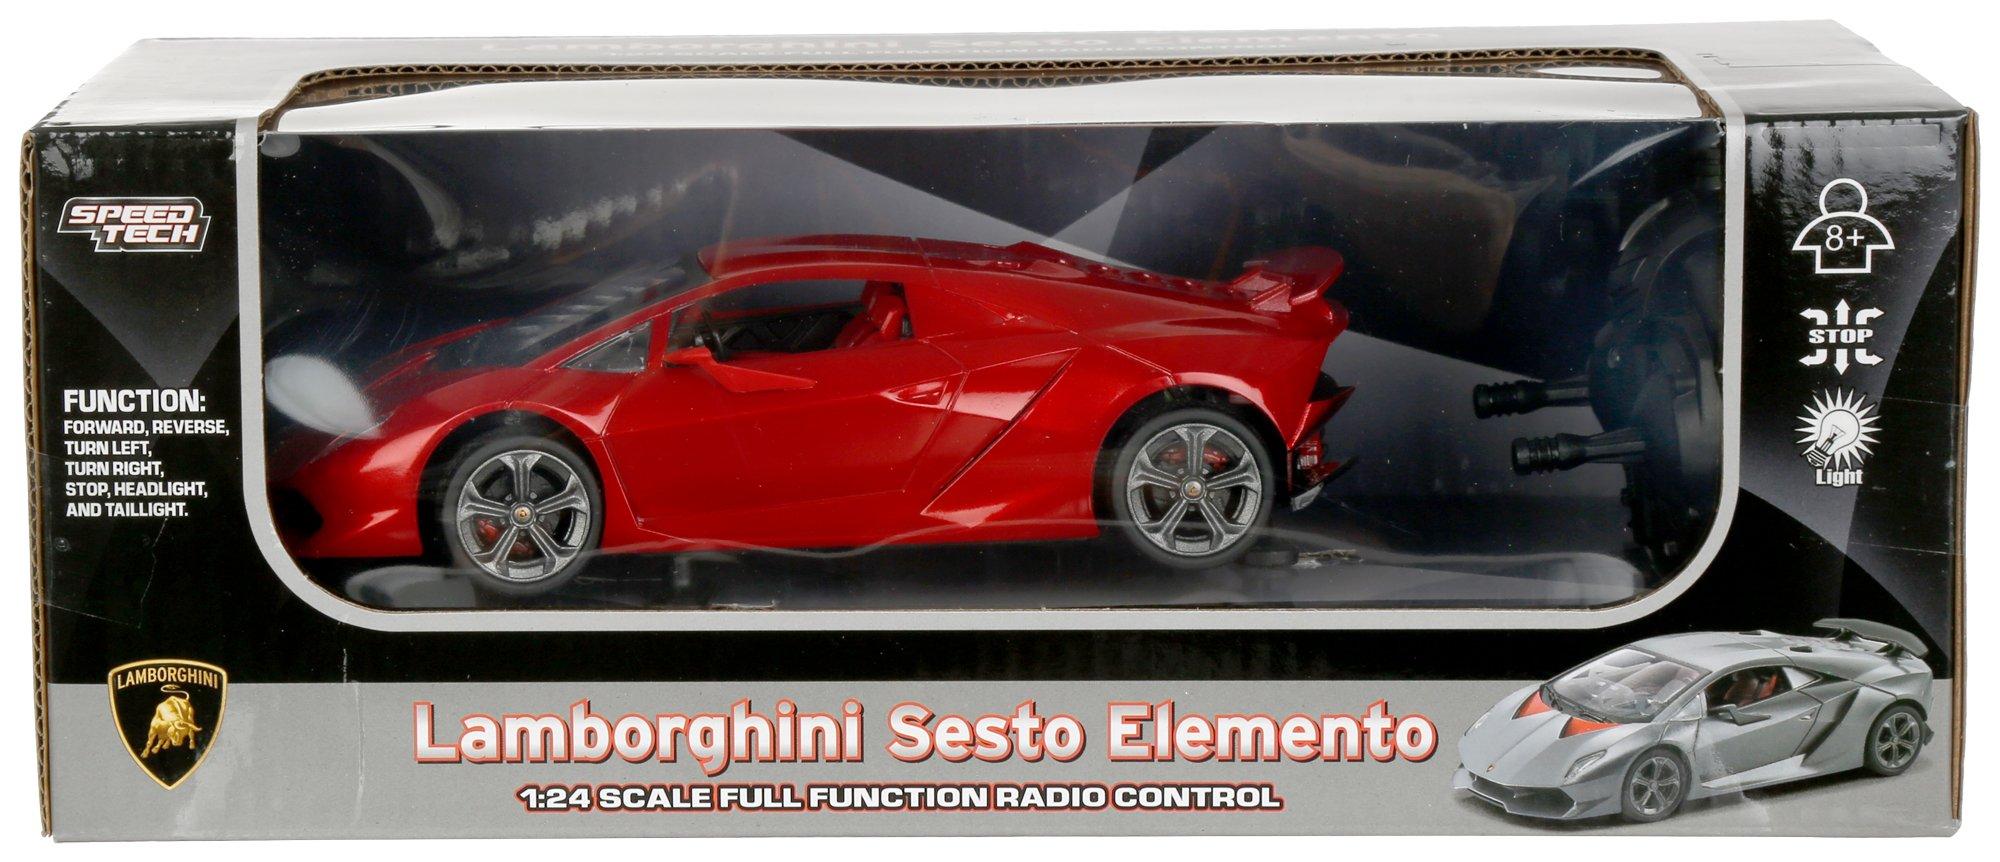 Lamborghini Radio Control Toy